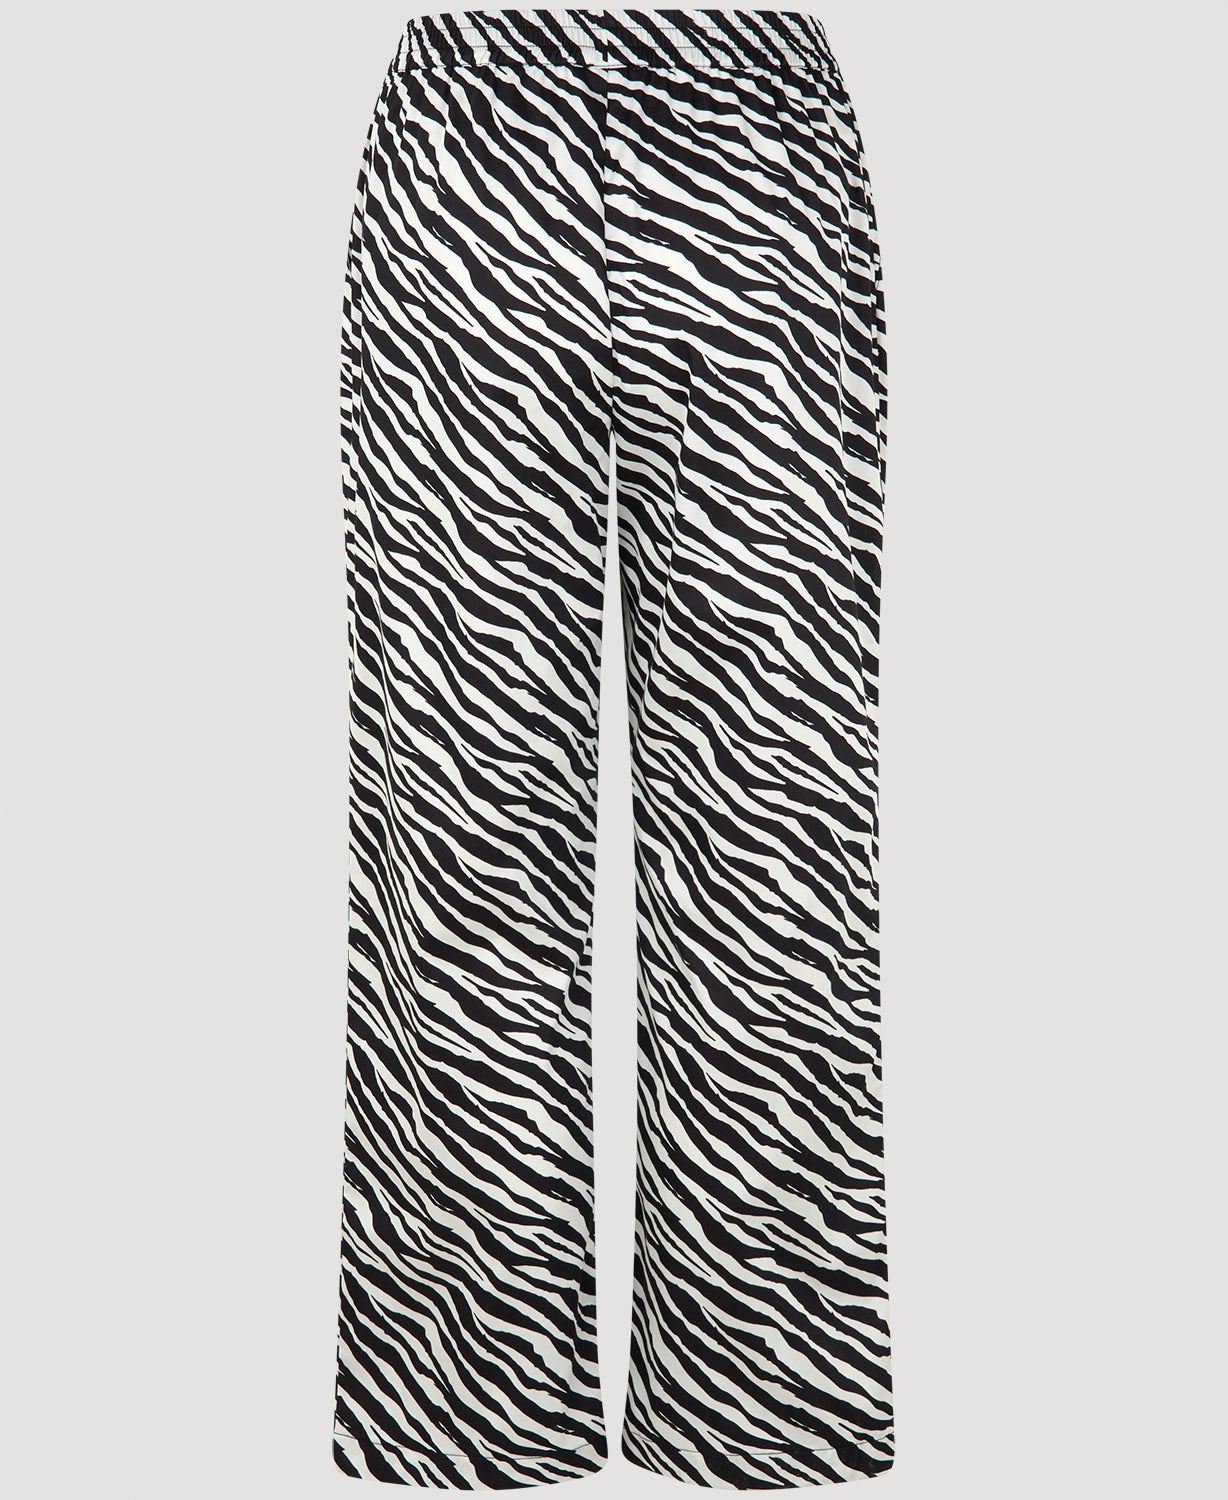 Notes du Nord Kira Pants P Pants 913 Zebra